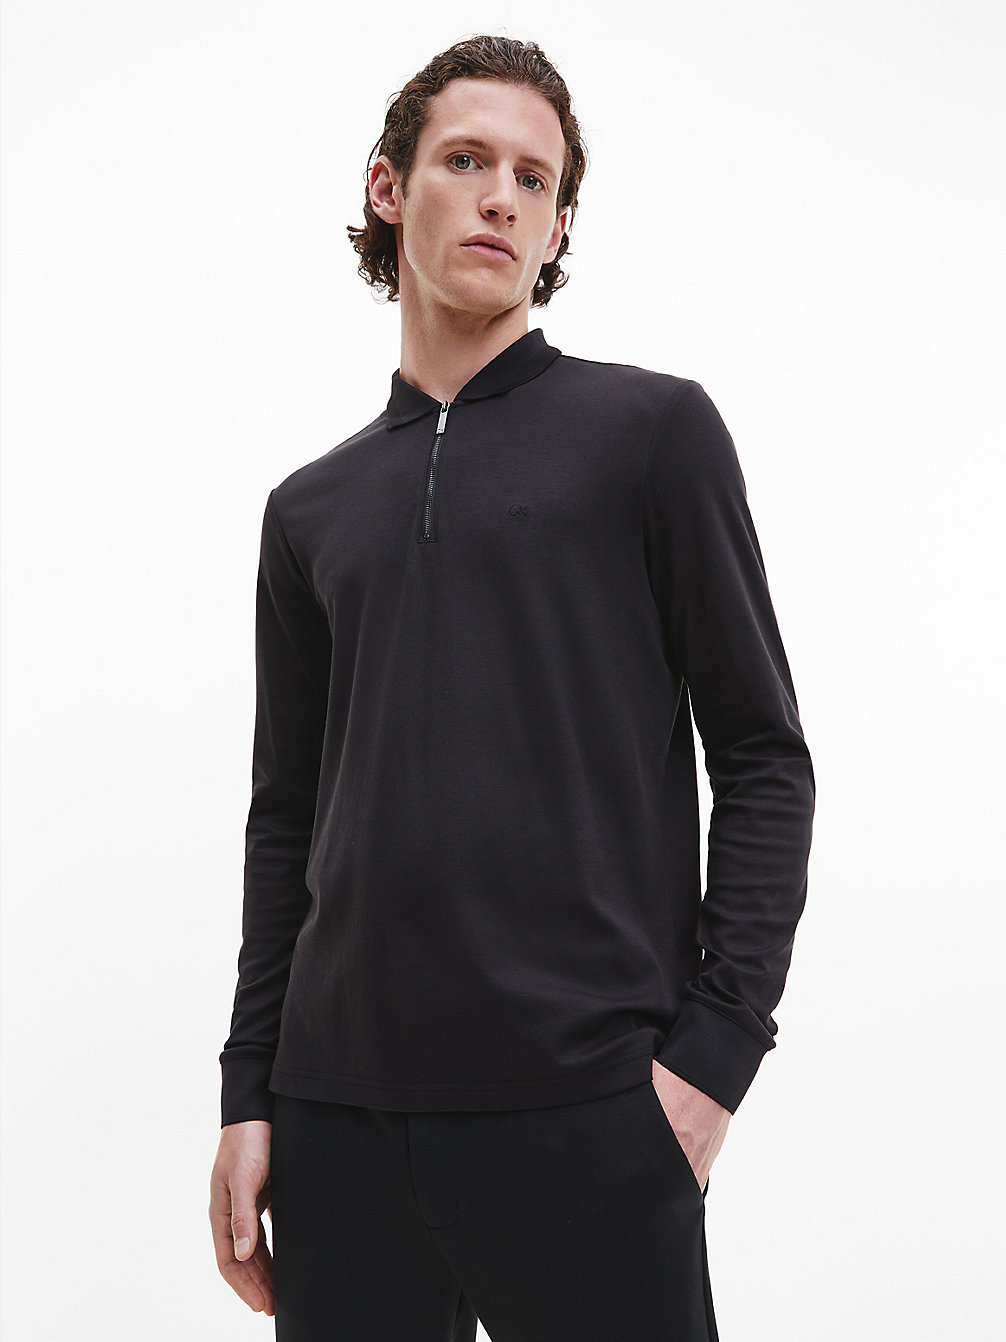 CK BLACK > Poloshirt Mit Reißverschluss-Kragen > undefined Herren - Calvin Klein